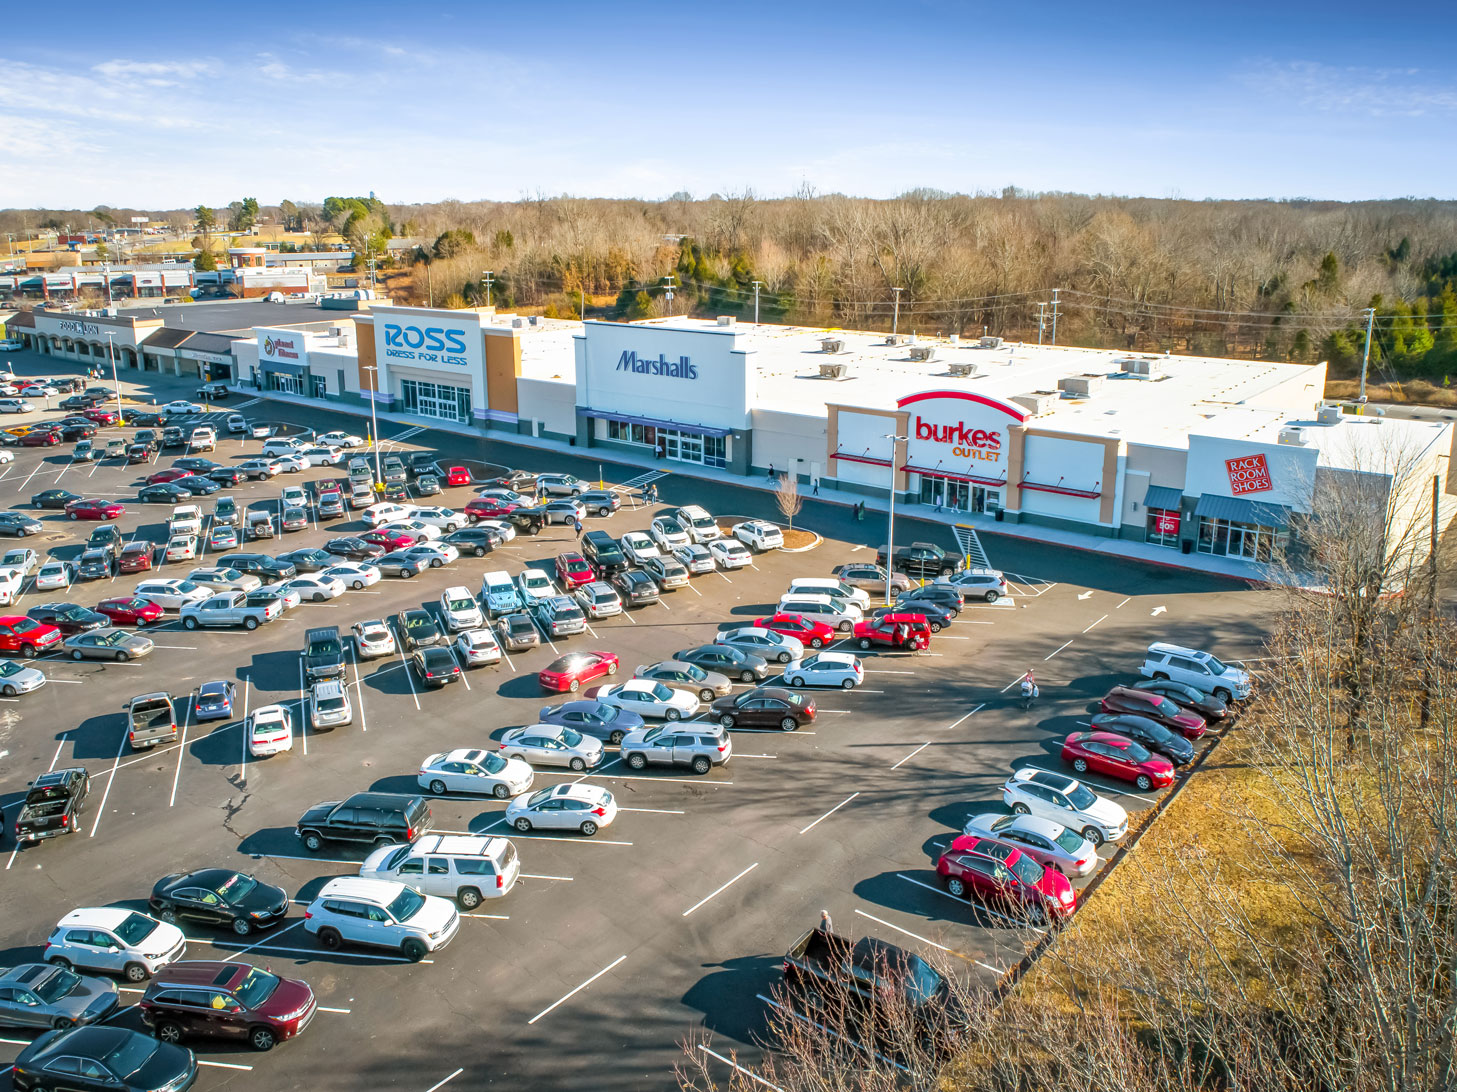 Rise Partners Clarksville Commons Shopping Center development